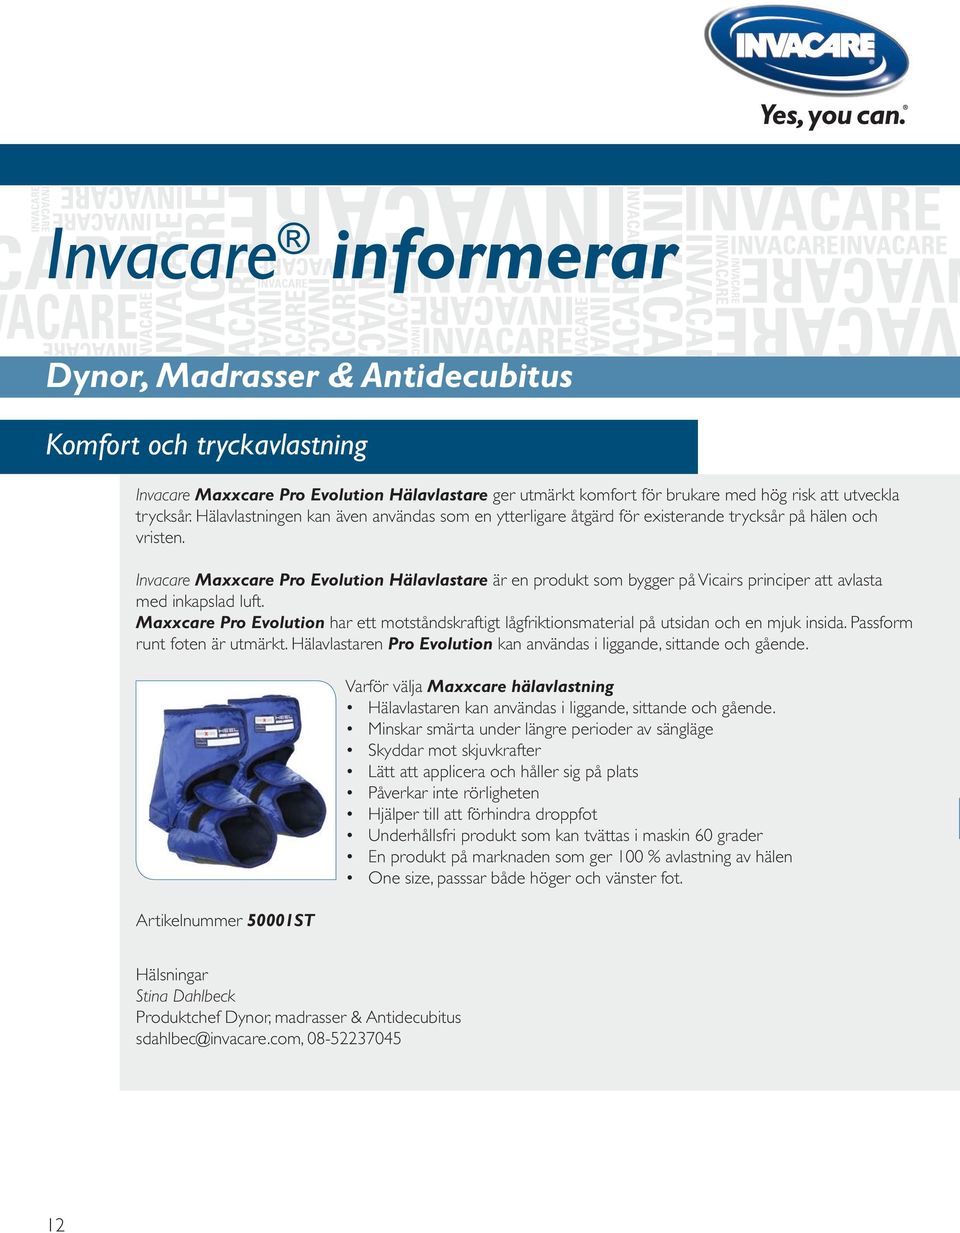 Invacare Maxxcare Pro Evolution Hälavlastare är en produkt som bygger på Vicairs principer att avlasta med inkapslad luft.